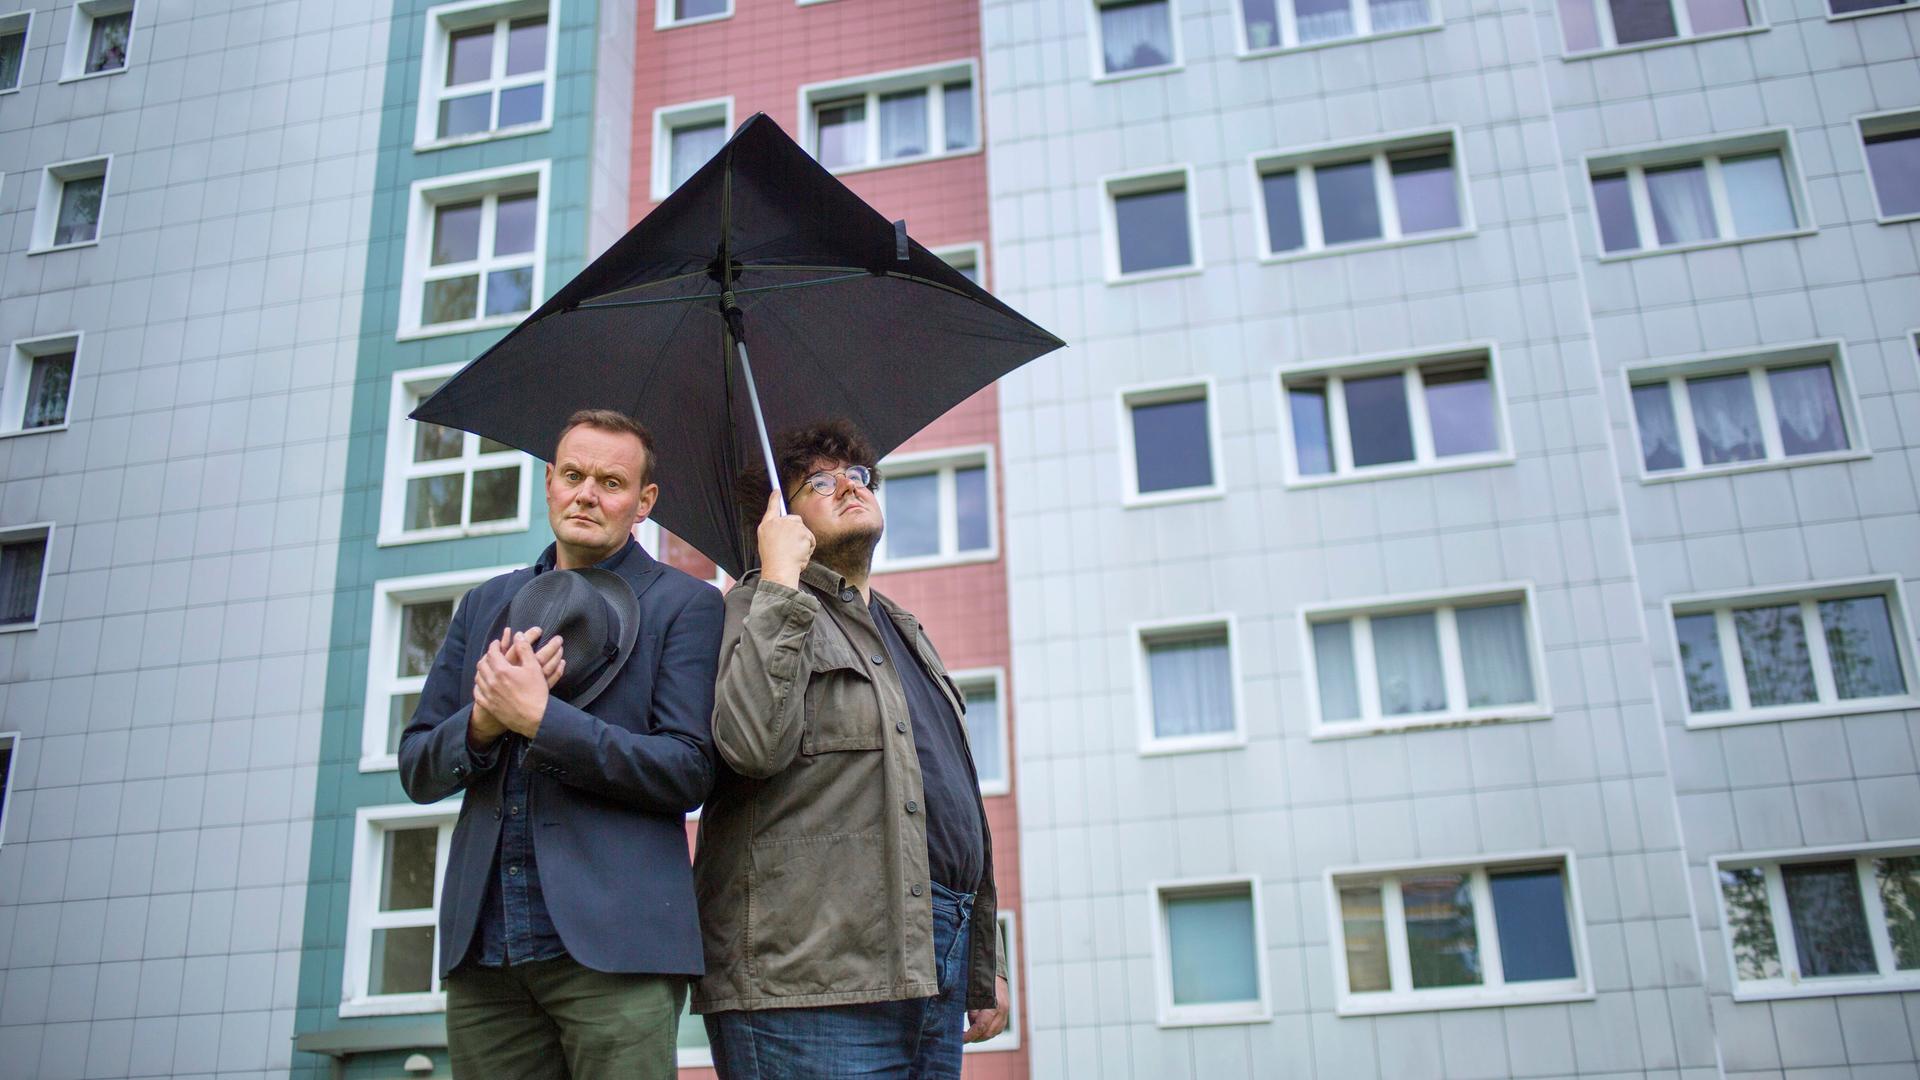 Devid Striesow und Axel Ranisch stehen unter einem schwarzen quadratischen Regenschirm vor der Fassade eines Hochhauses und schauen besorgt